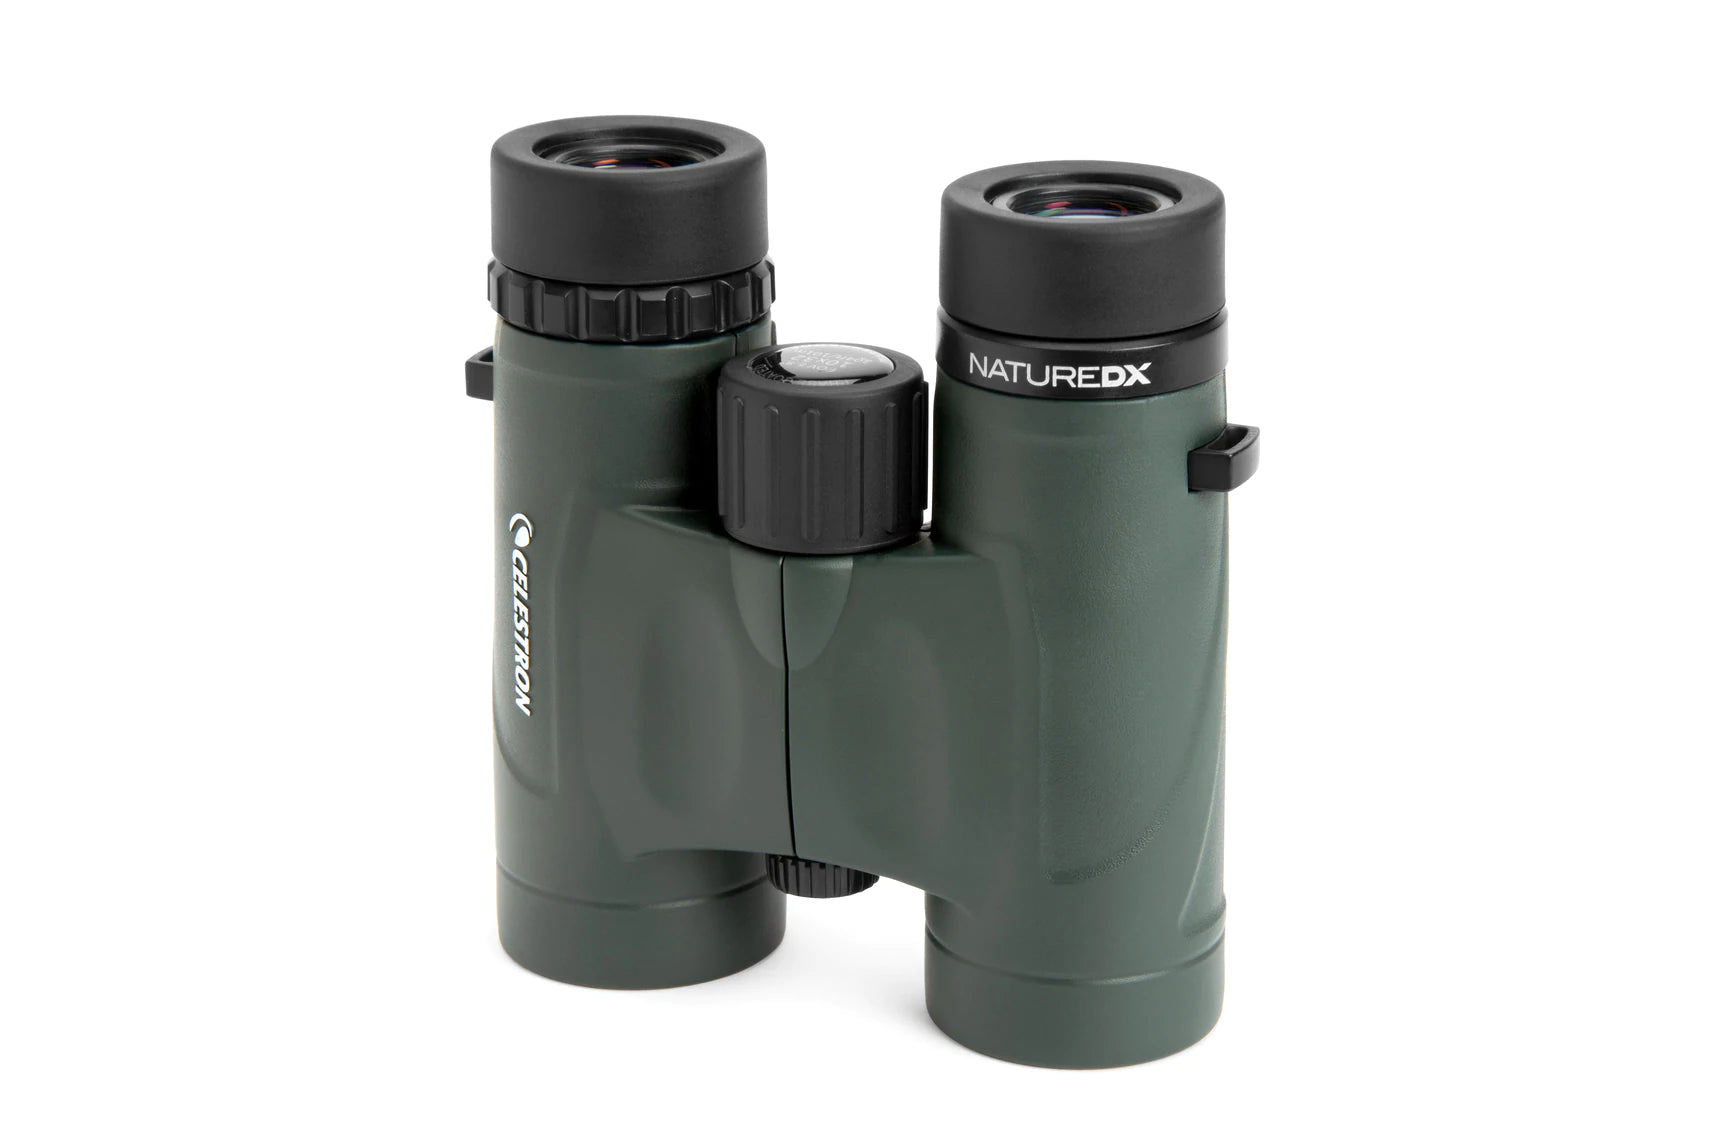 Nature DX Binoculars